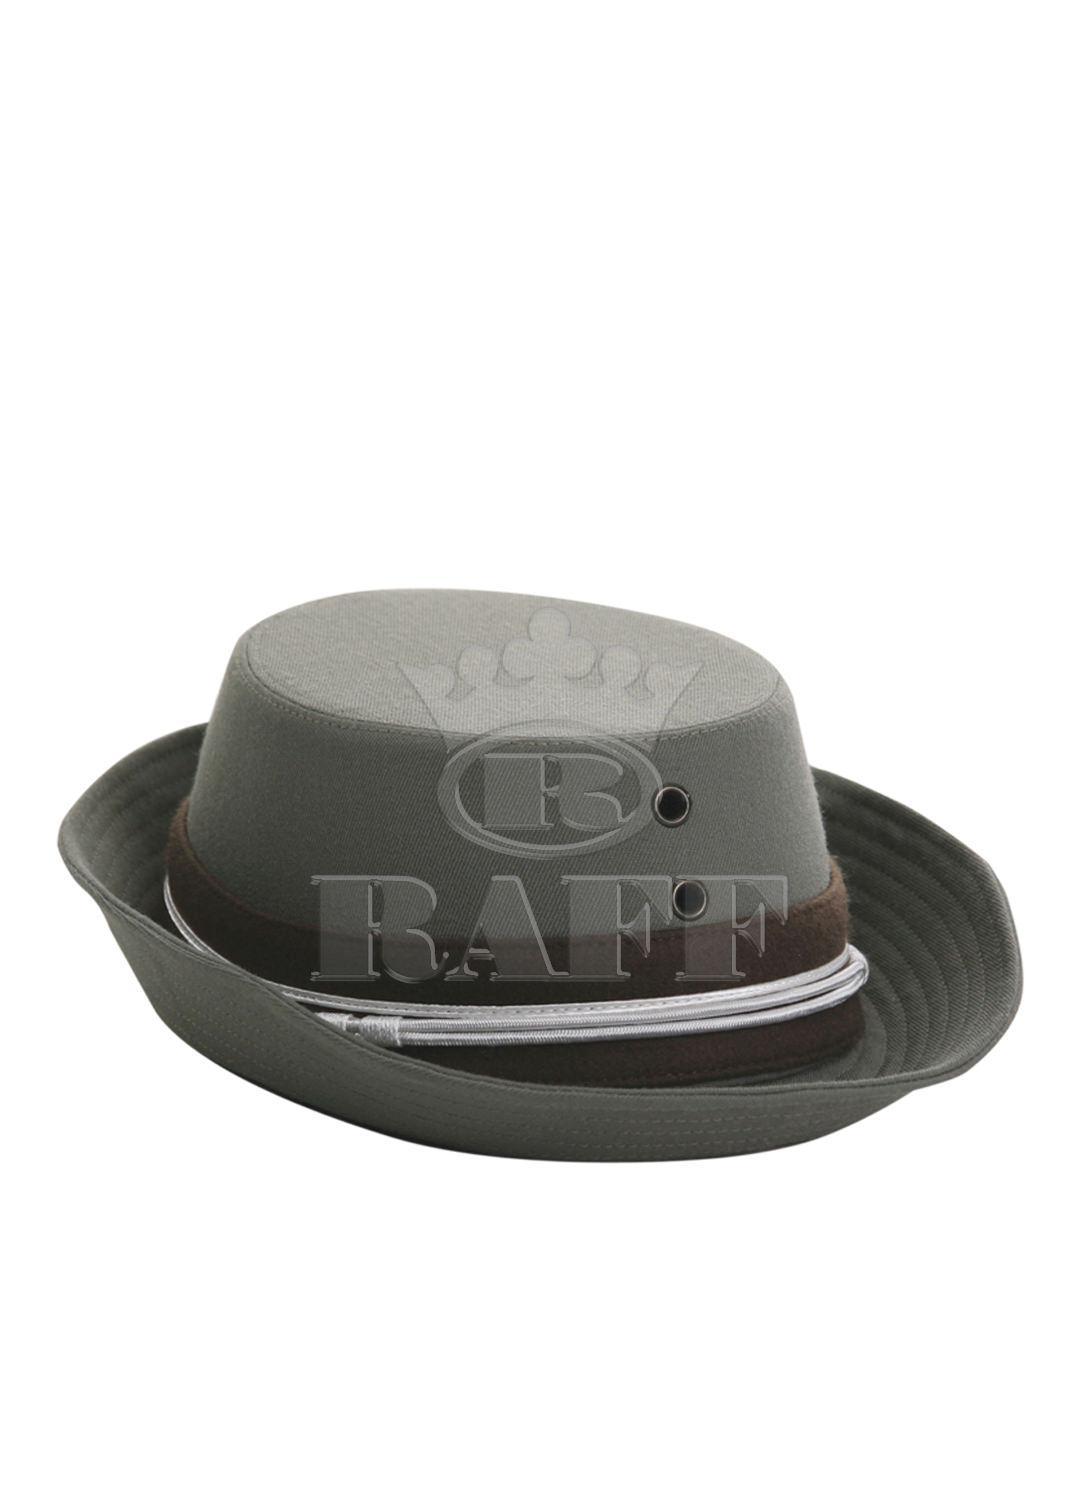 Sombrero para el oficiales de ejército